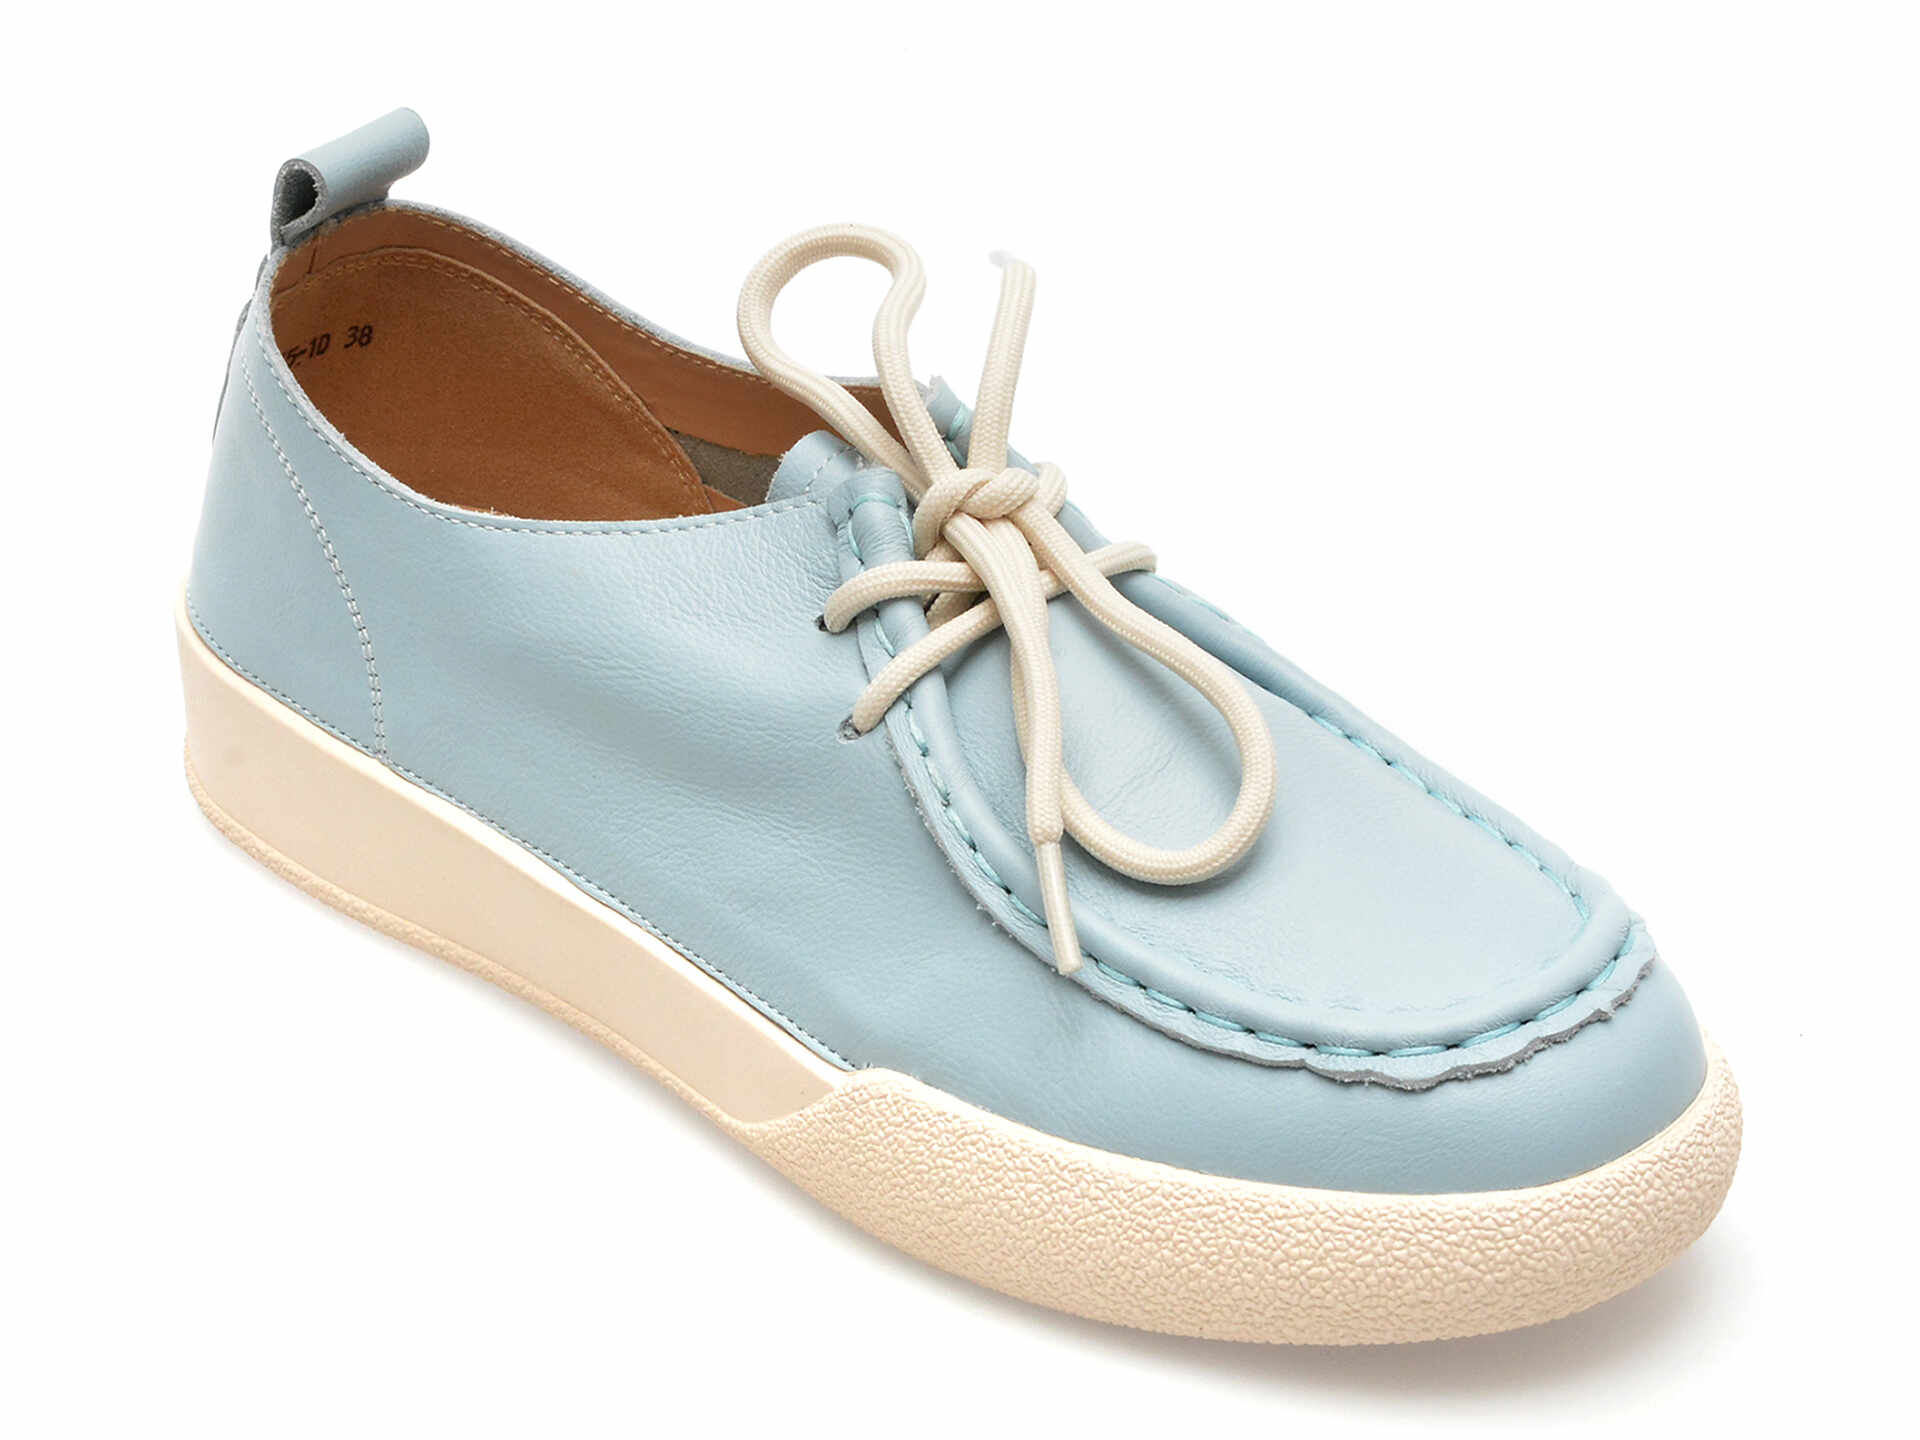 Pantofi FLAVIA PASSINI albastre, A865, din piele naturala